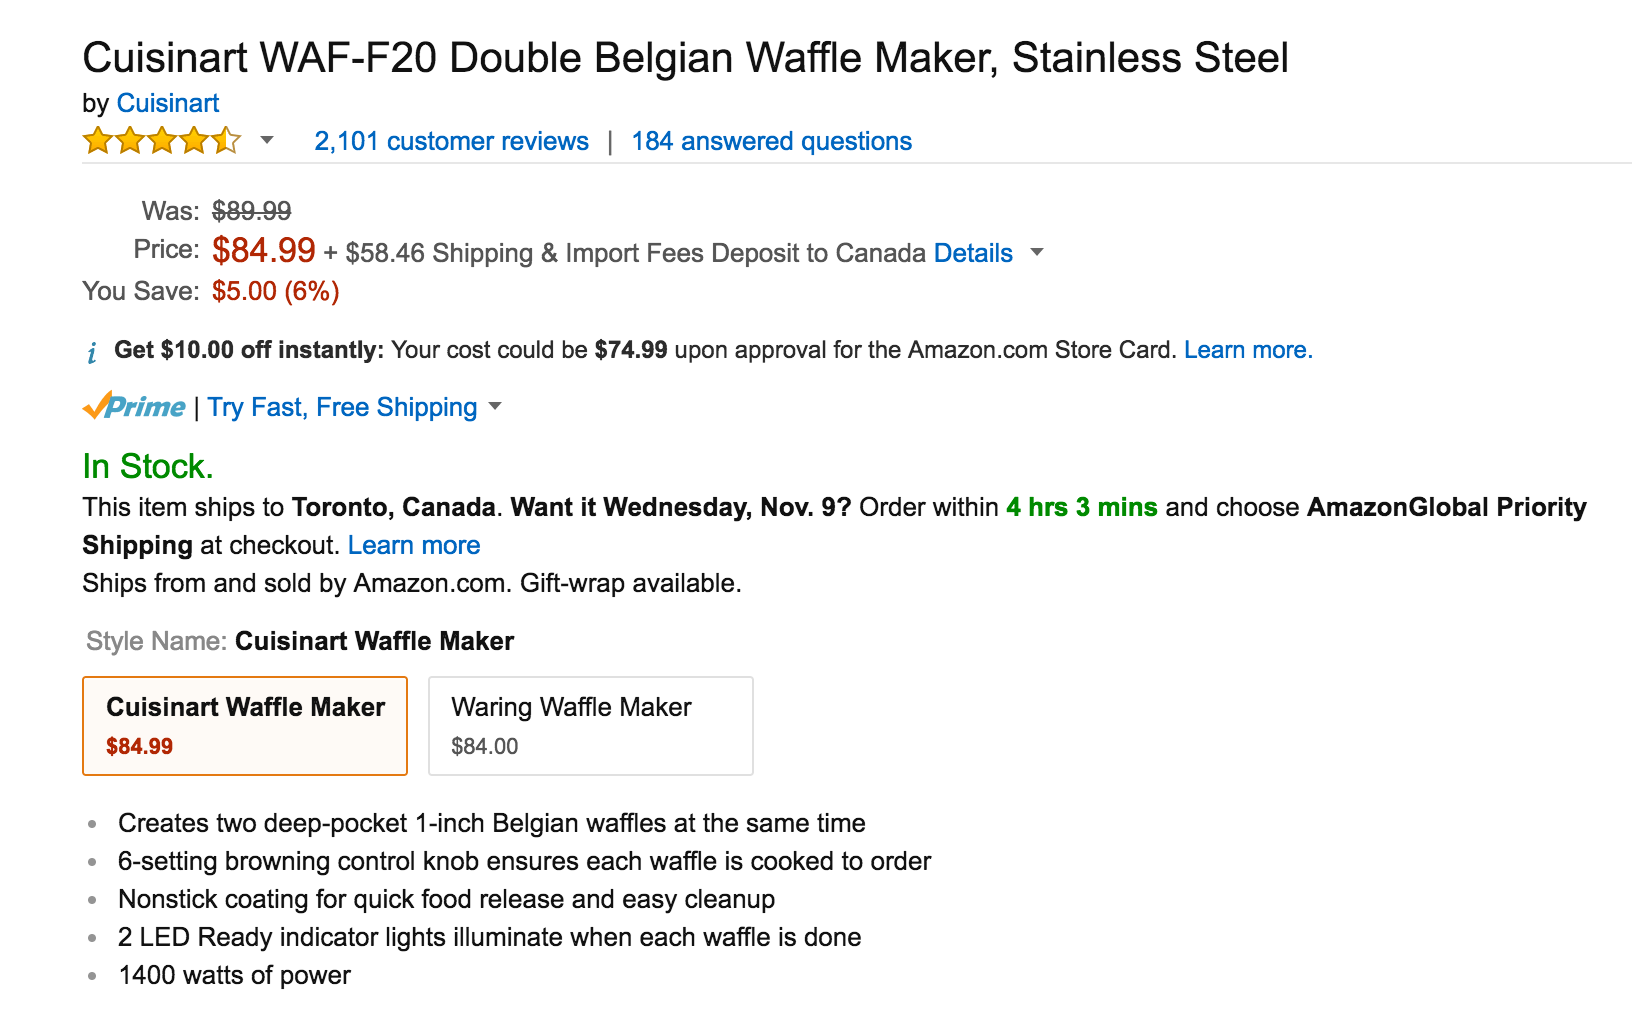 cuisinart-double-belgian-waffle-maker-in-stainless-steel-waf-f20-2